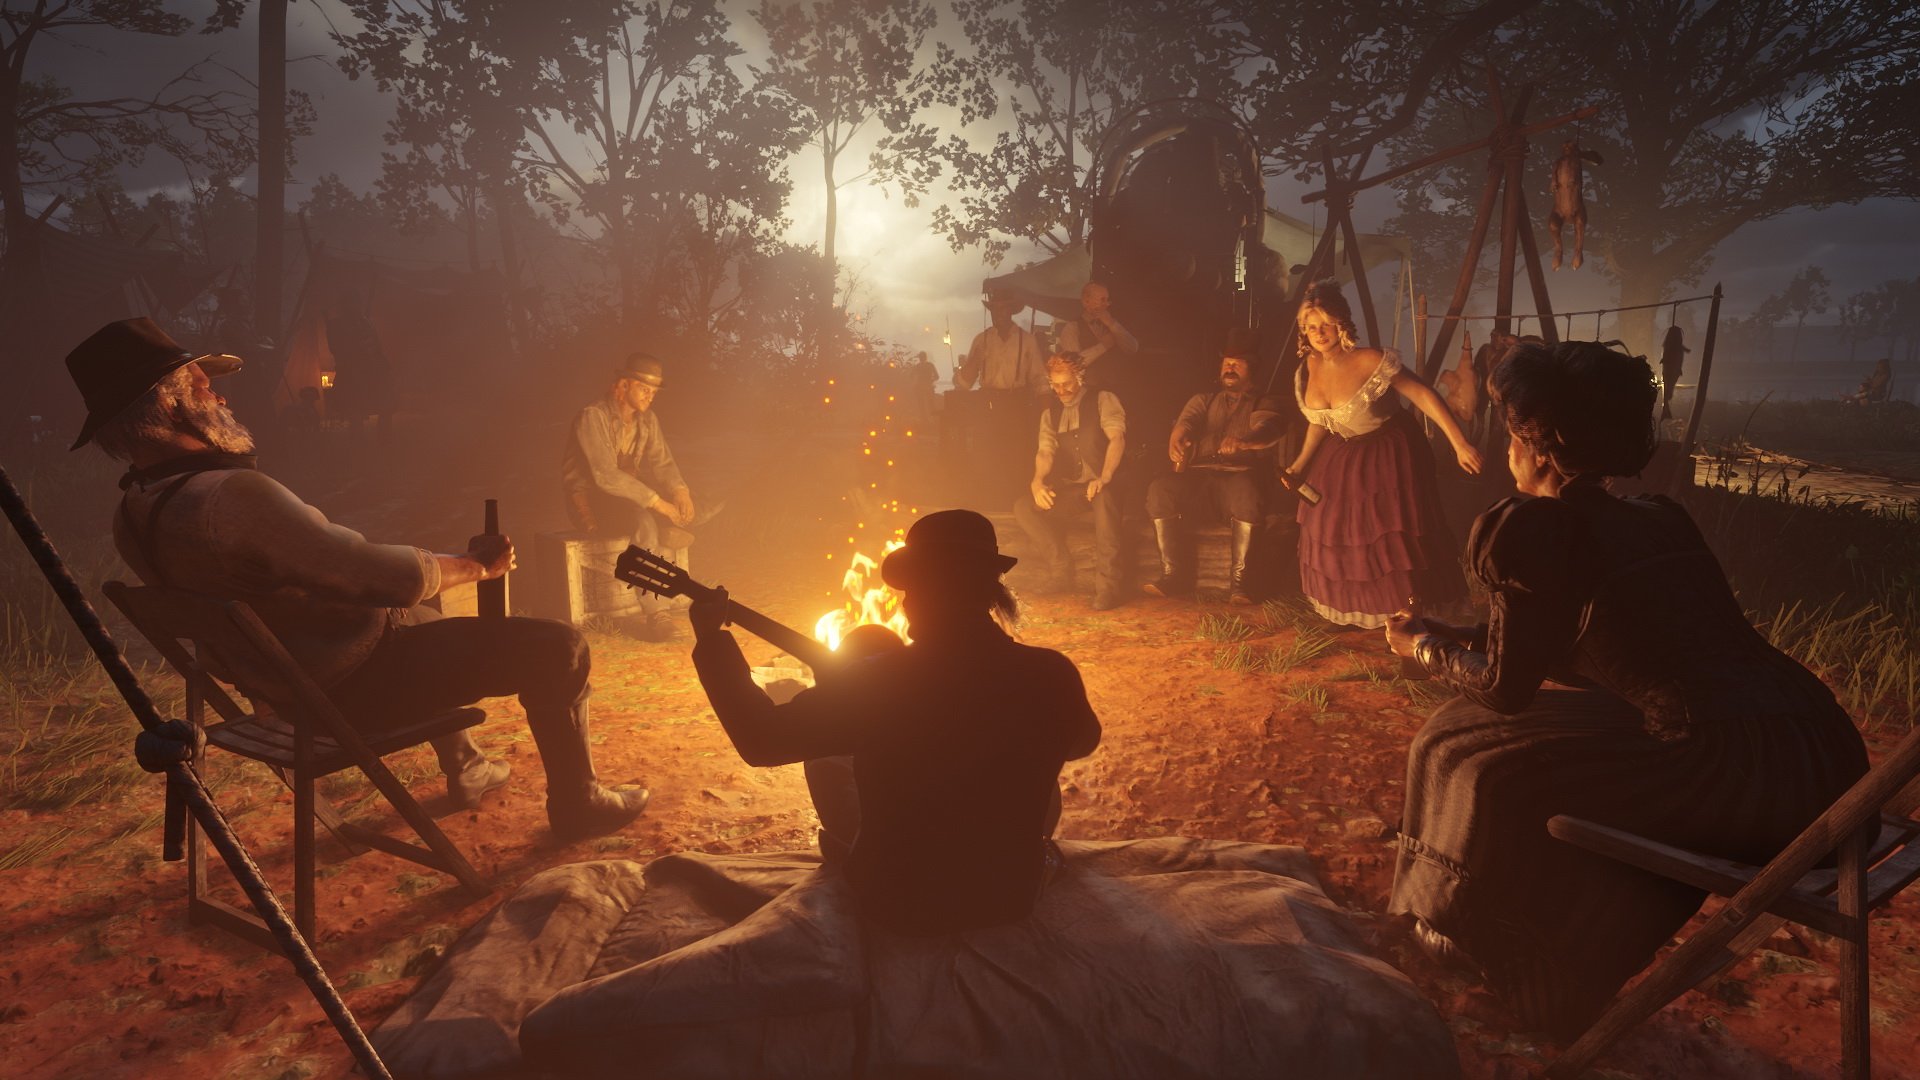 Depois da Rockstar, Microsoft confirma Red Dead Redemption 2 em 4K no X1X